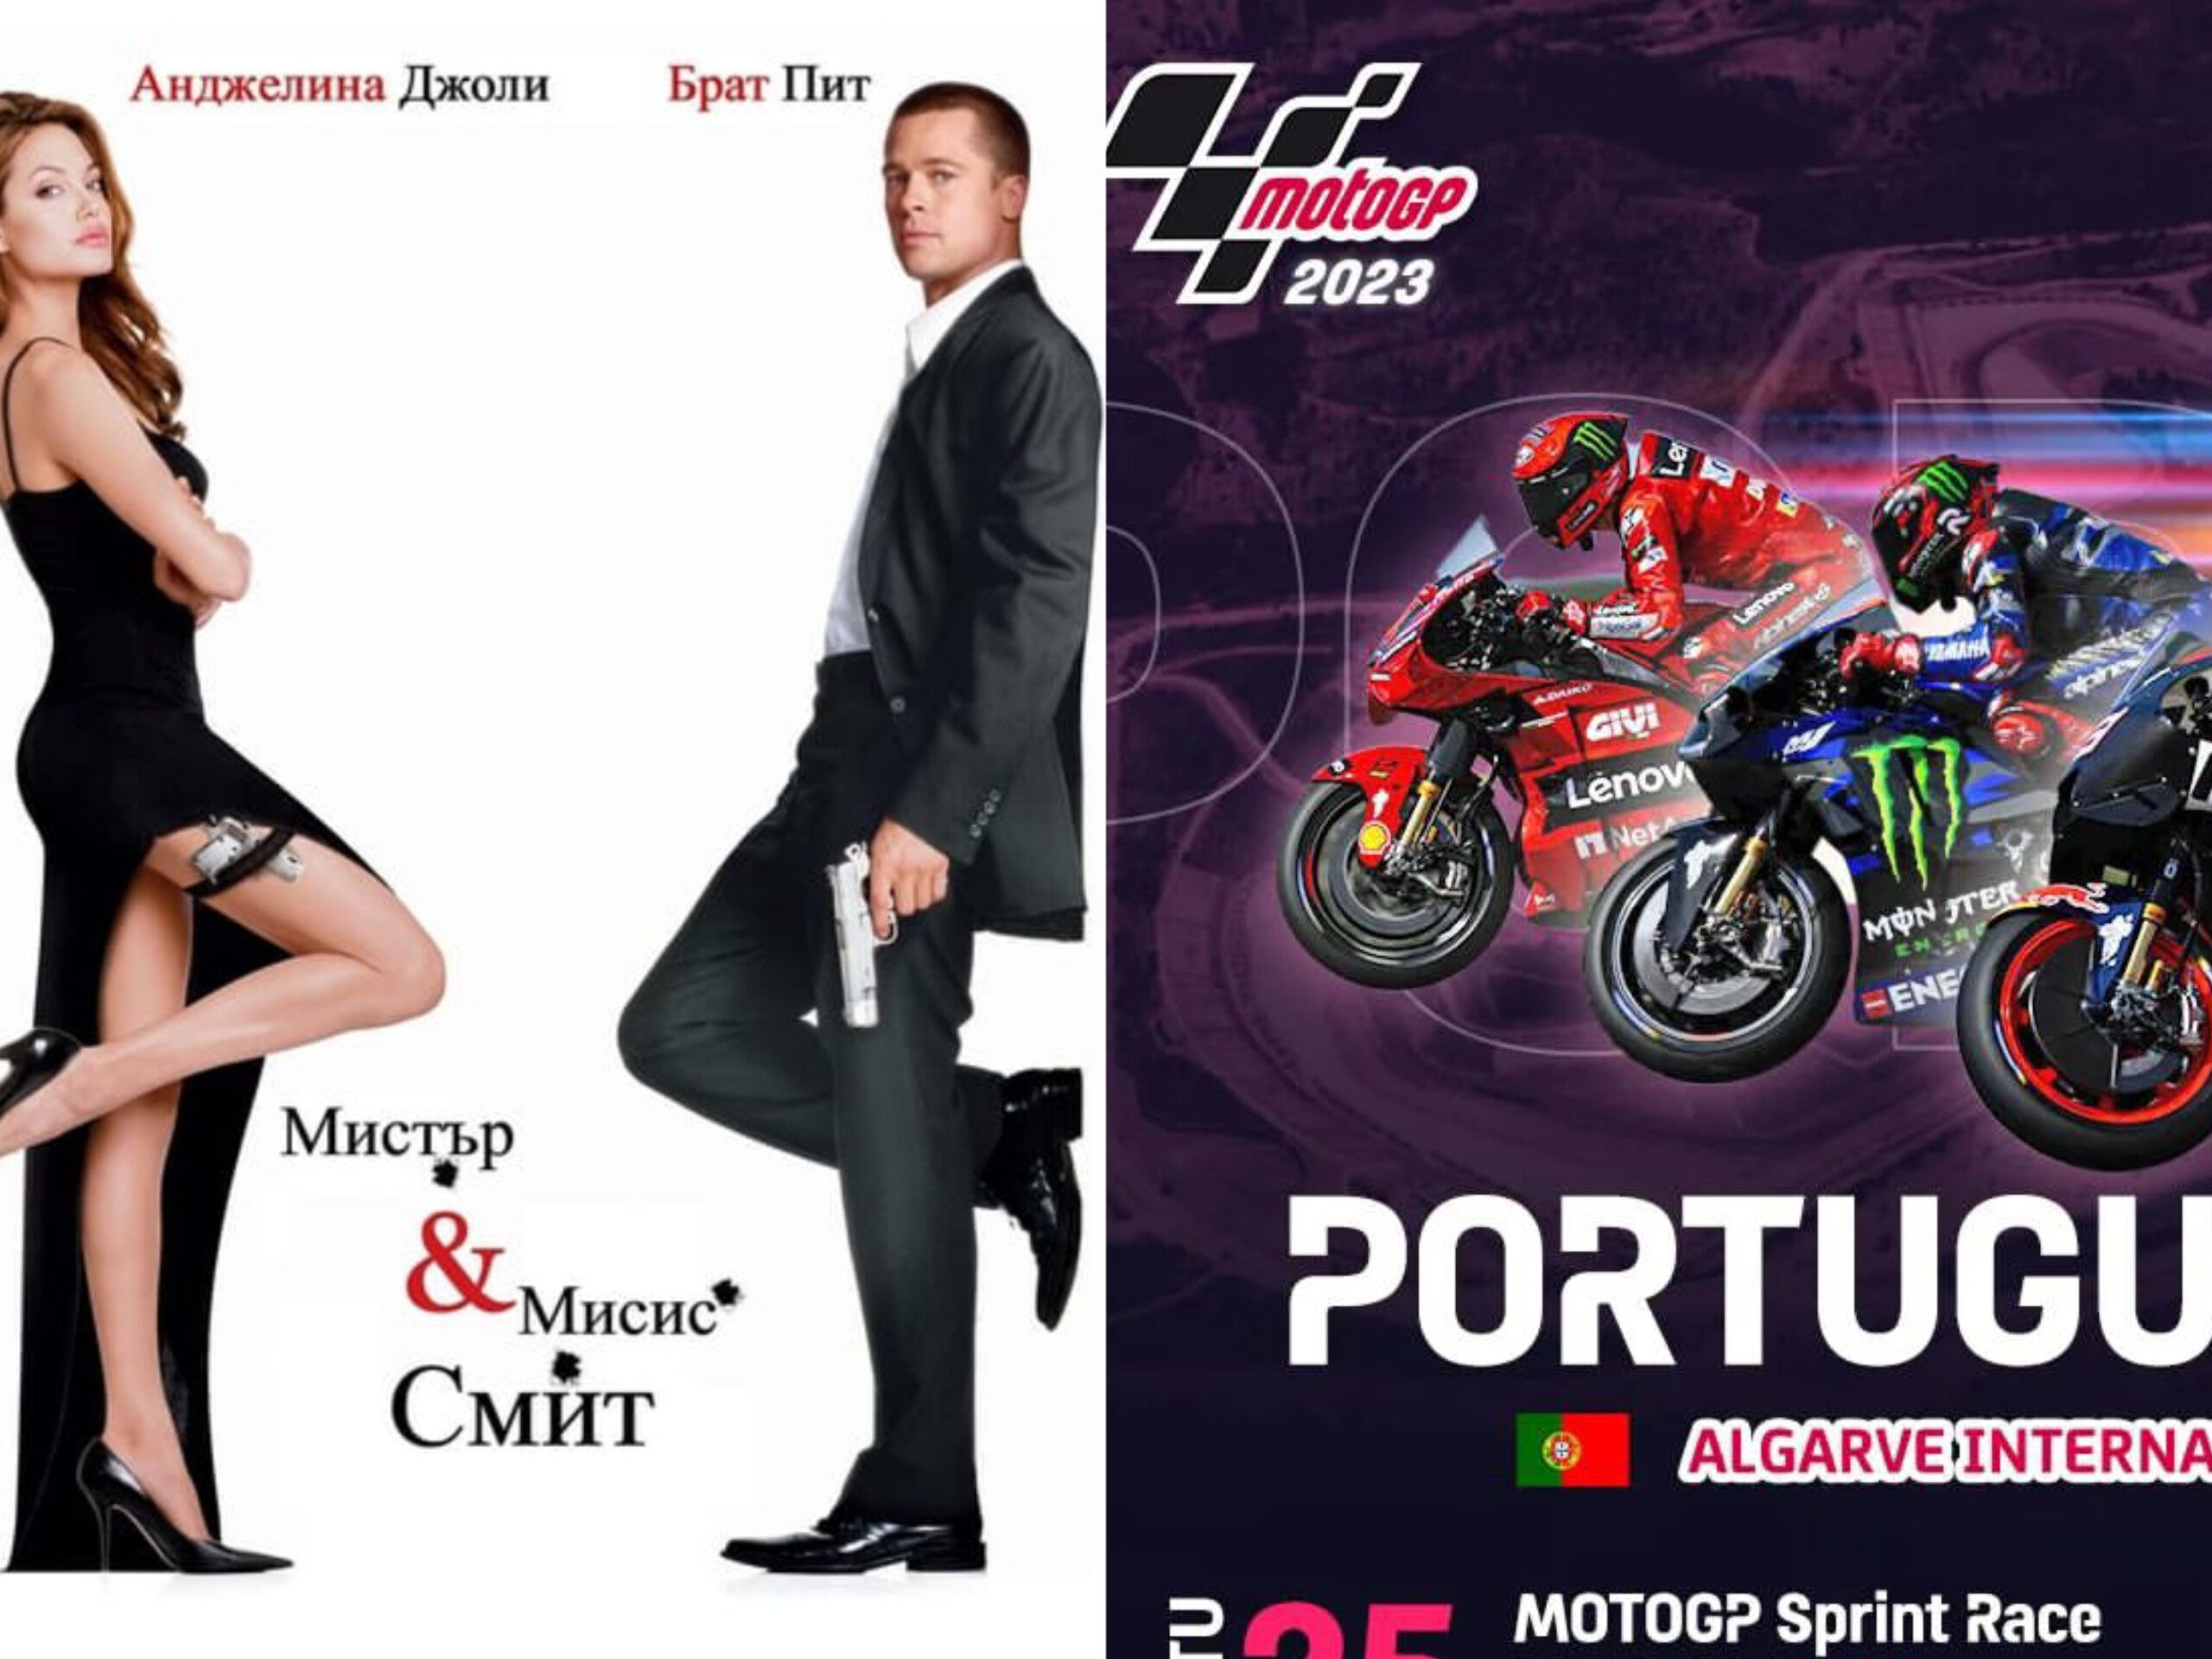 Bioskop Trans TV Mr and Mrs Smith dan MotoGP Race Portugal, acara Trans TV dan Trans 7 yang tayang hari ini Minggu, 26 Maret 2023